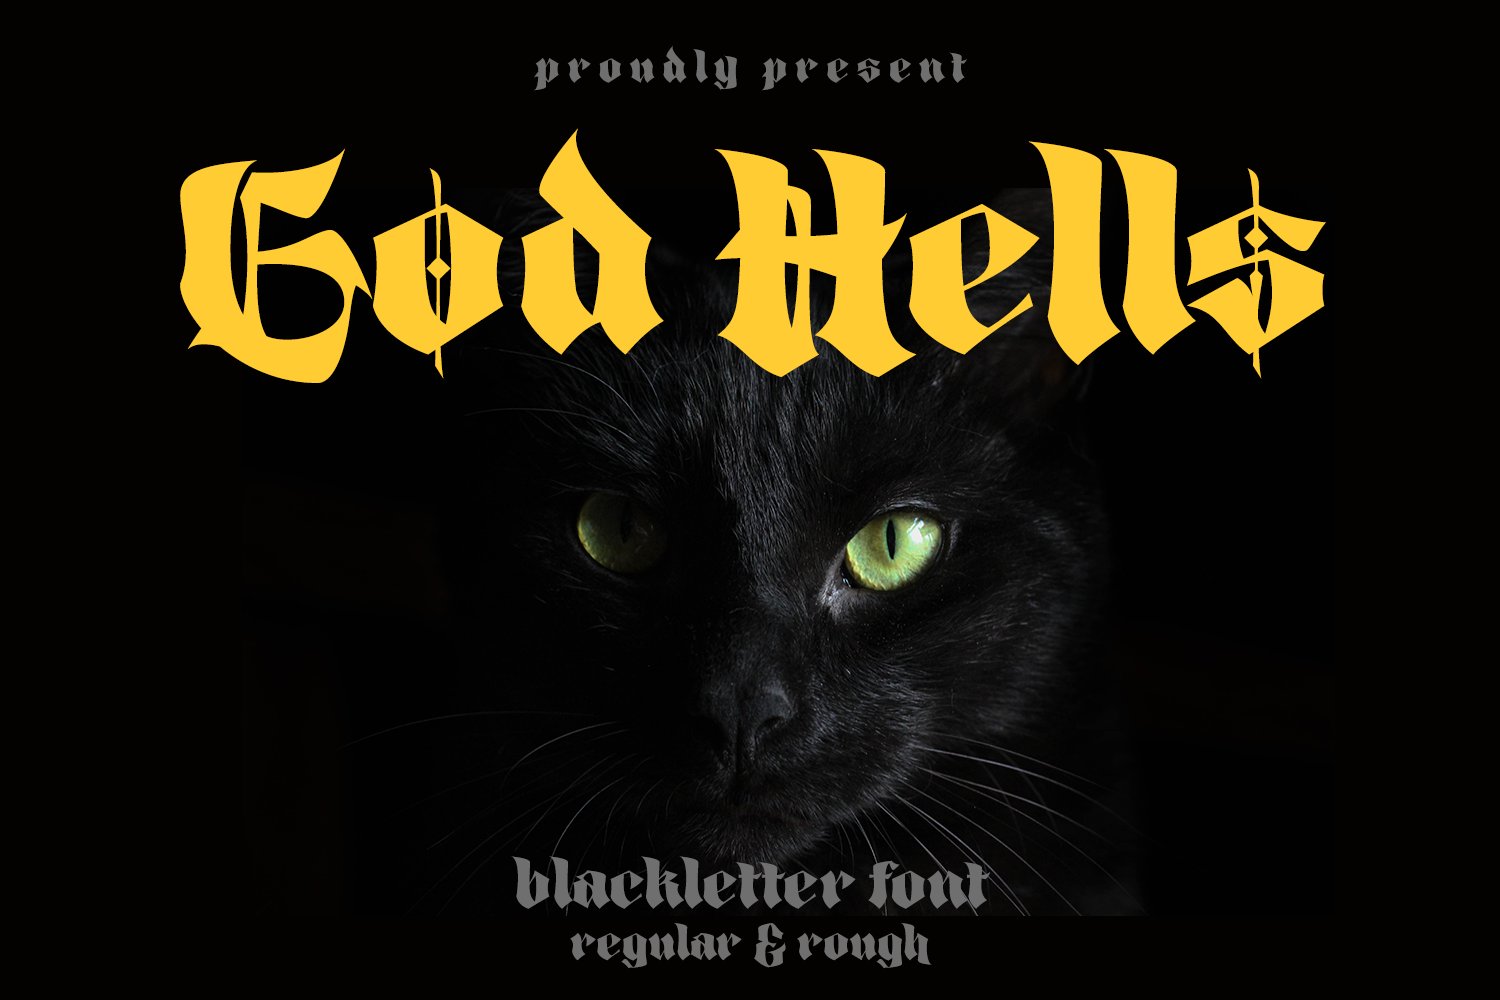 God Hells - Blackletter Font cover image.